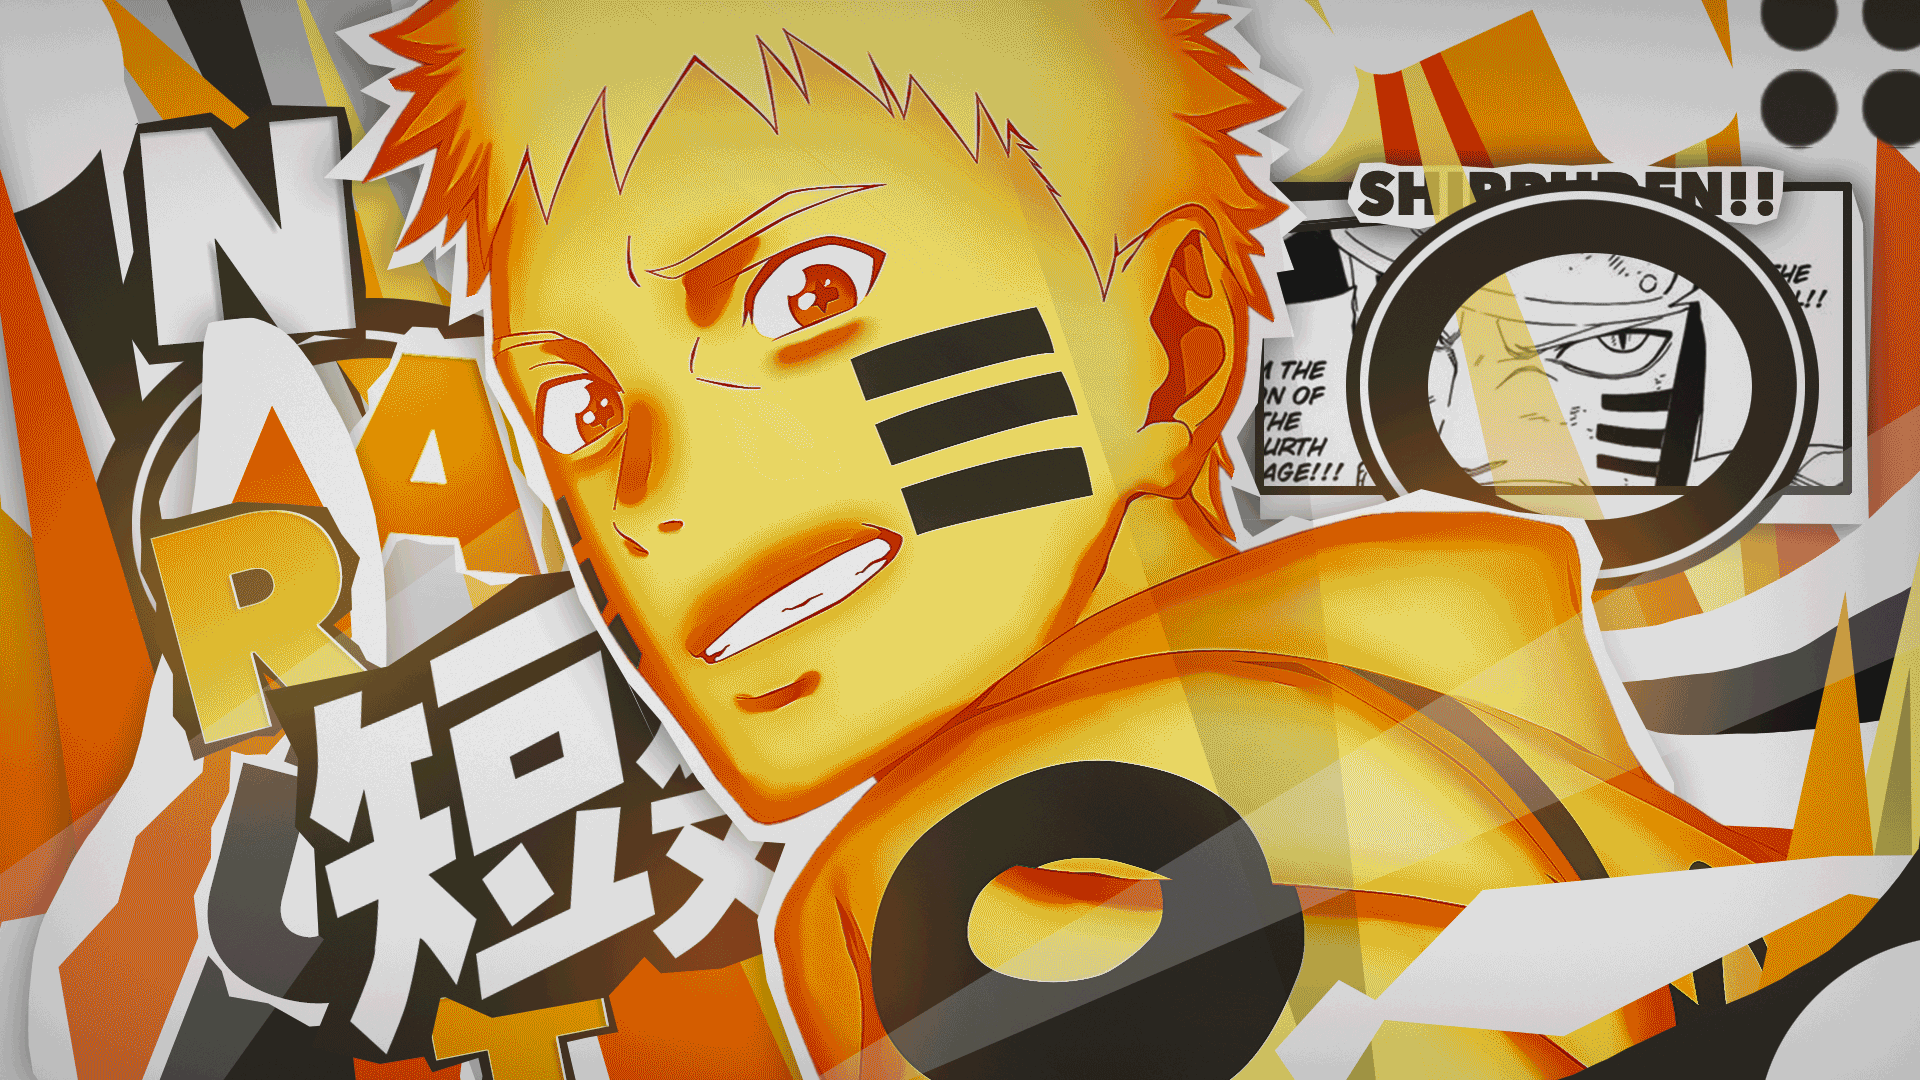 Naruto: Cùng chiêm ngưỡng hình ảnh đầy màu sắc huyền bí về siêu anh hùng Naruto, người đã khẳng định mình là một trong những nhân vật nổi tiếng nhất trong thế giới anime. Những trận chiến gay cấn, những đòn tấn công đầy uy lực, tất cả sẽ được tái hiện tuyệt đẹp trong hình ảnh.